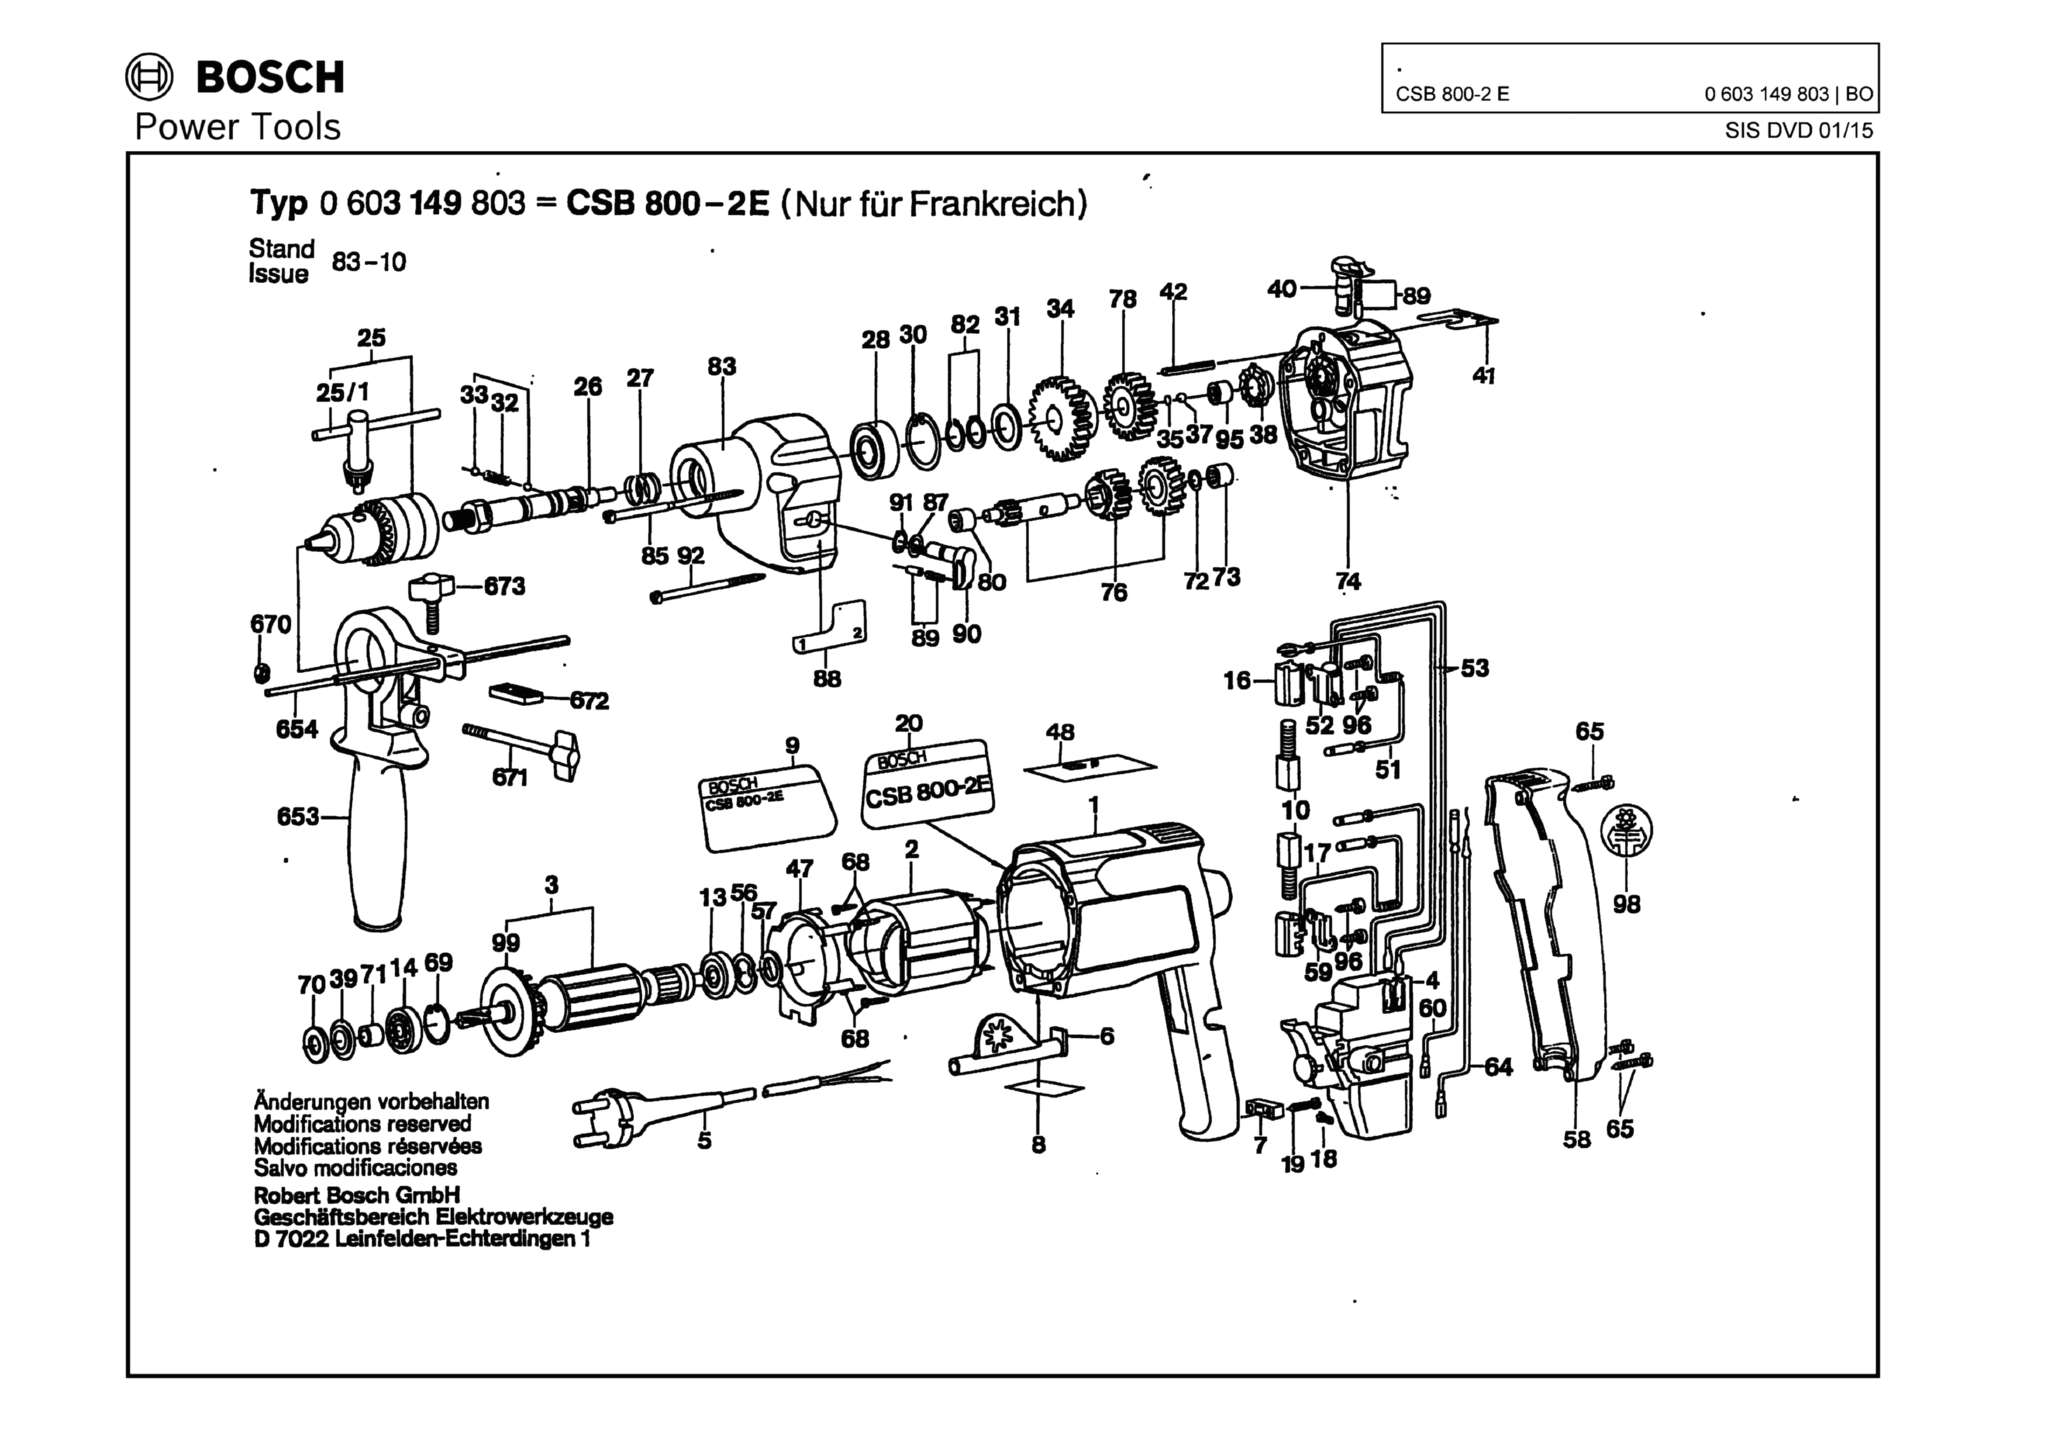 Запчасти, схема и деталировка Bosch CSB 800-2 E (ТИП 0603149803)